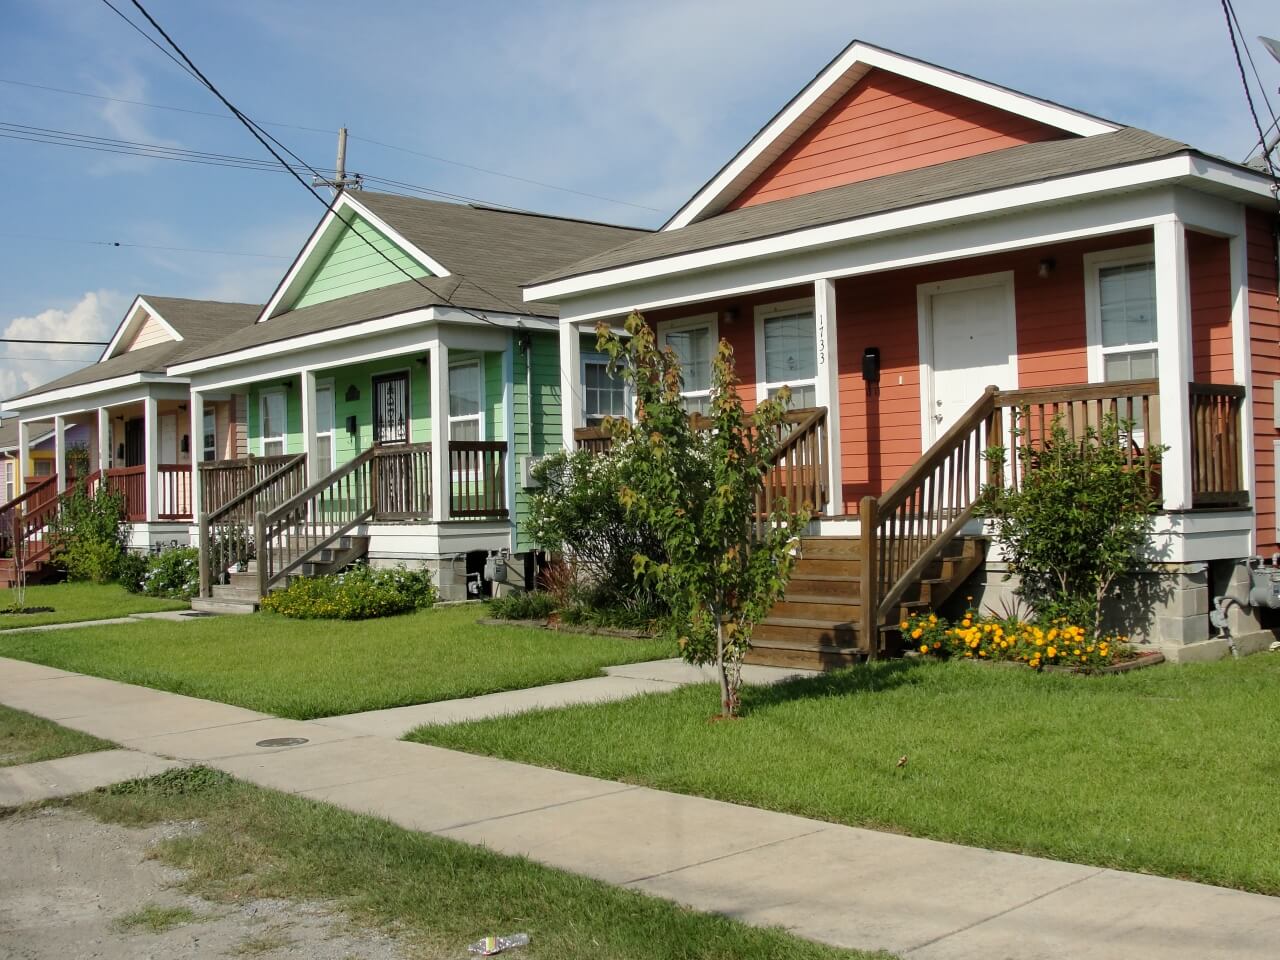 Nowy Orlean, Luizjana, 12 sierpnia 2011 r: miasteczko muzyków (Musician's Village) zbudowane dla muzyków przesiedlonych po huraganie Katrina, fot. Elliott Cowand Jr / Shutterstock.com